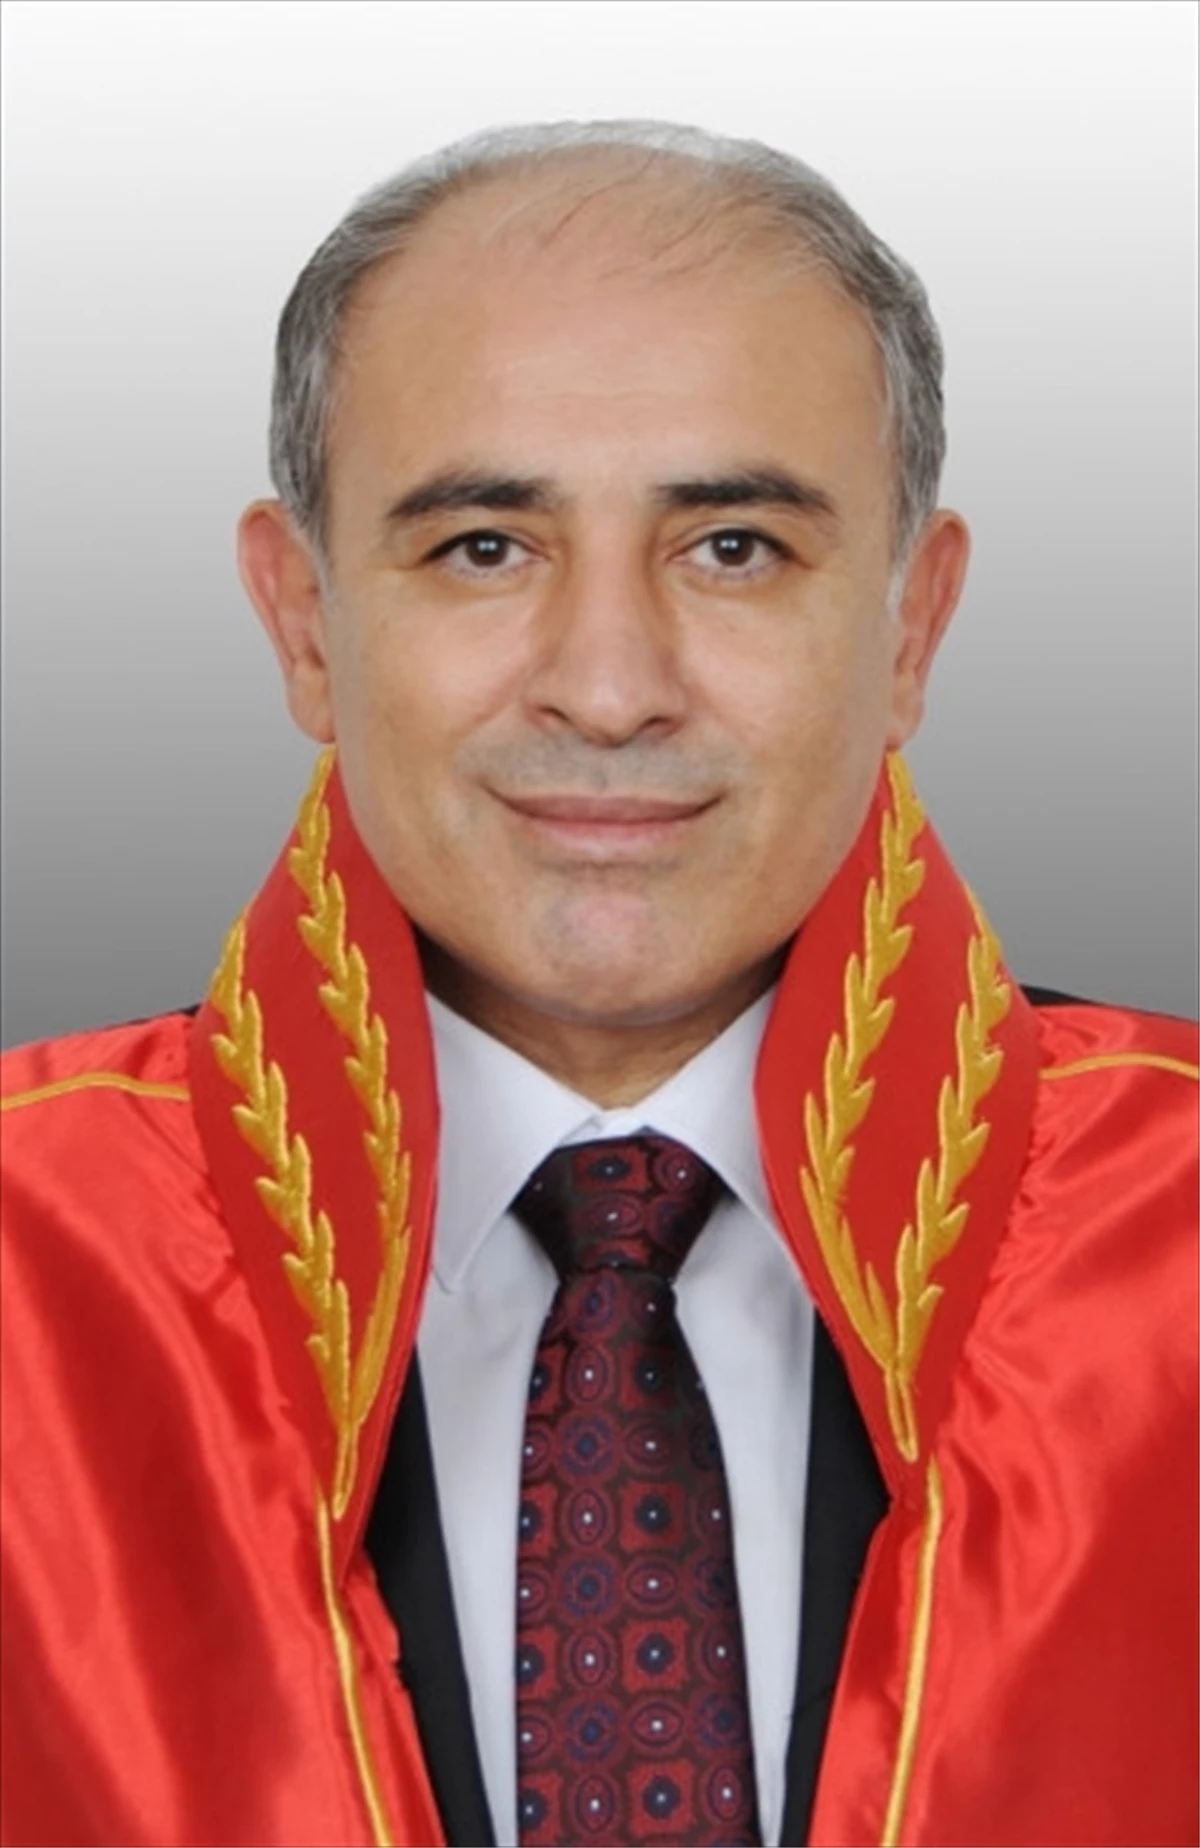 TFF Tahkim Kurulu Başkanı Mustafa Artuç Hayatını Kaybetti